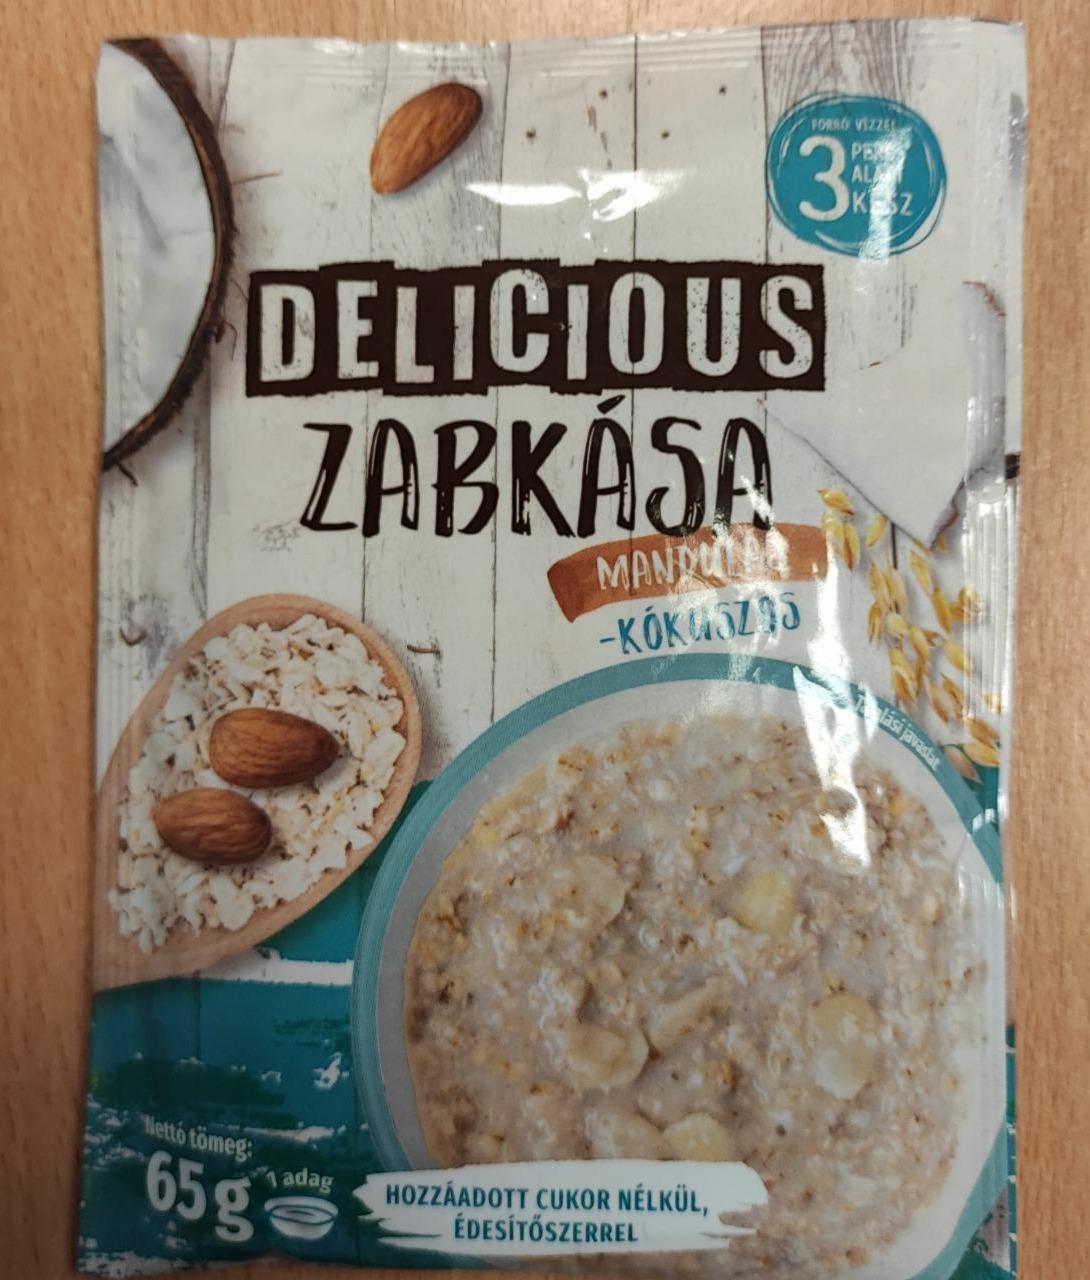 Фото - Каша овсяная миндаль-кокос Zabkasa Delicious